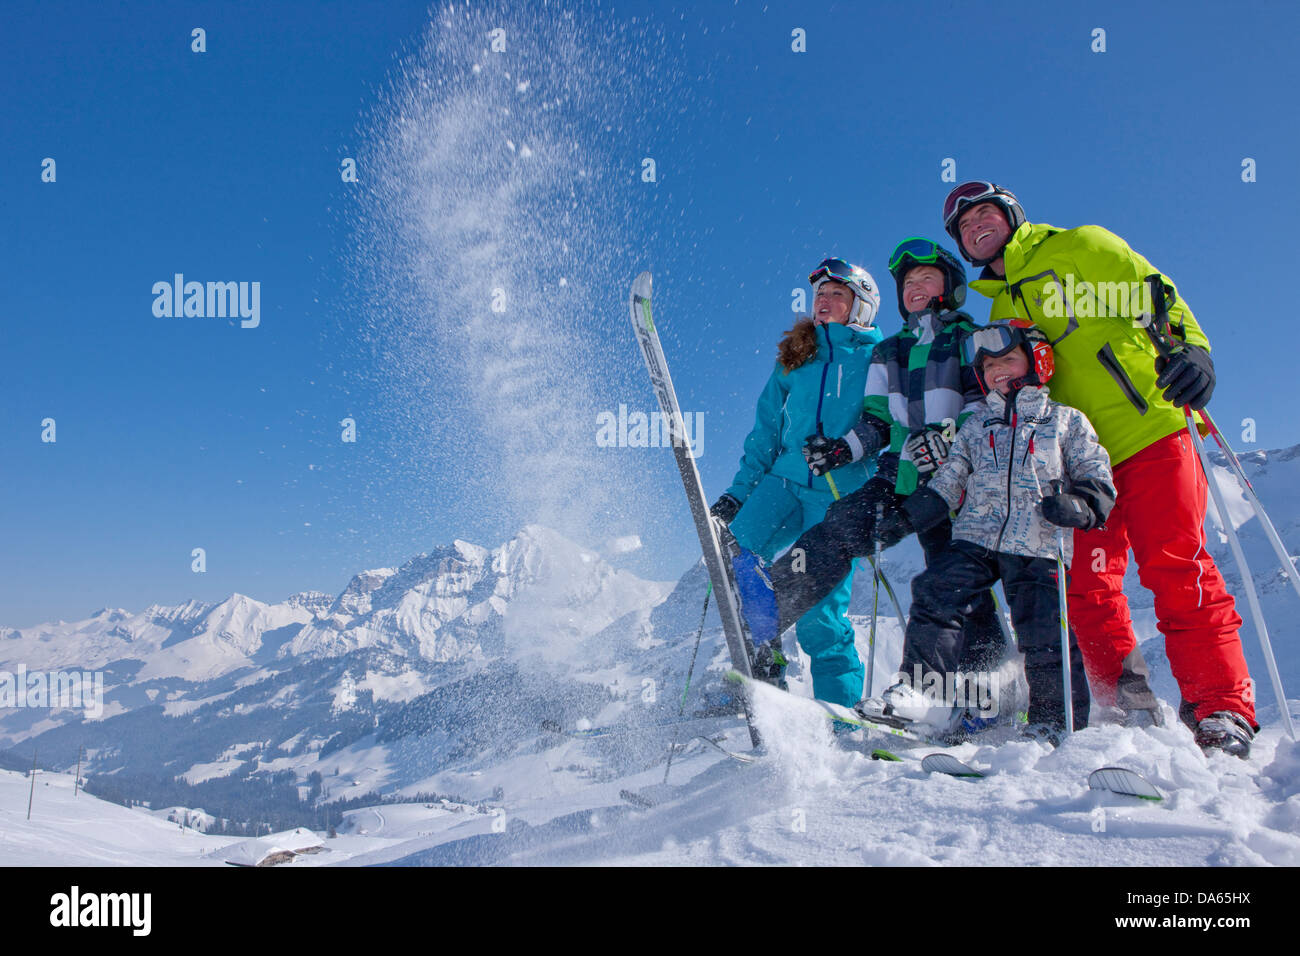 La famiglia inverno chat, area sciistica, Adelboden, inverno, il cantone di Berna Oberland Bernese, turismo, vacanze, famiglia, sport invernali, S Foto Stock